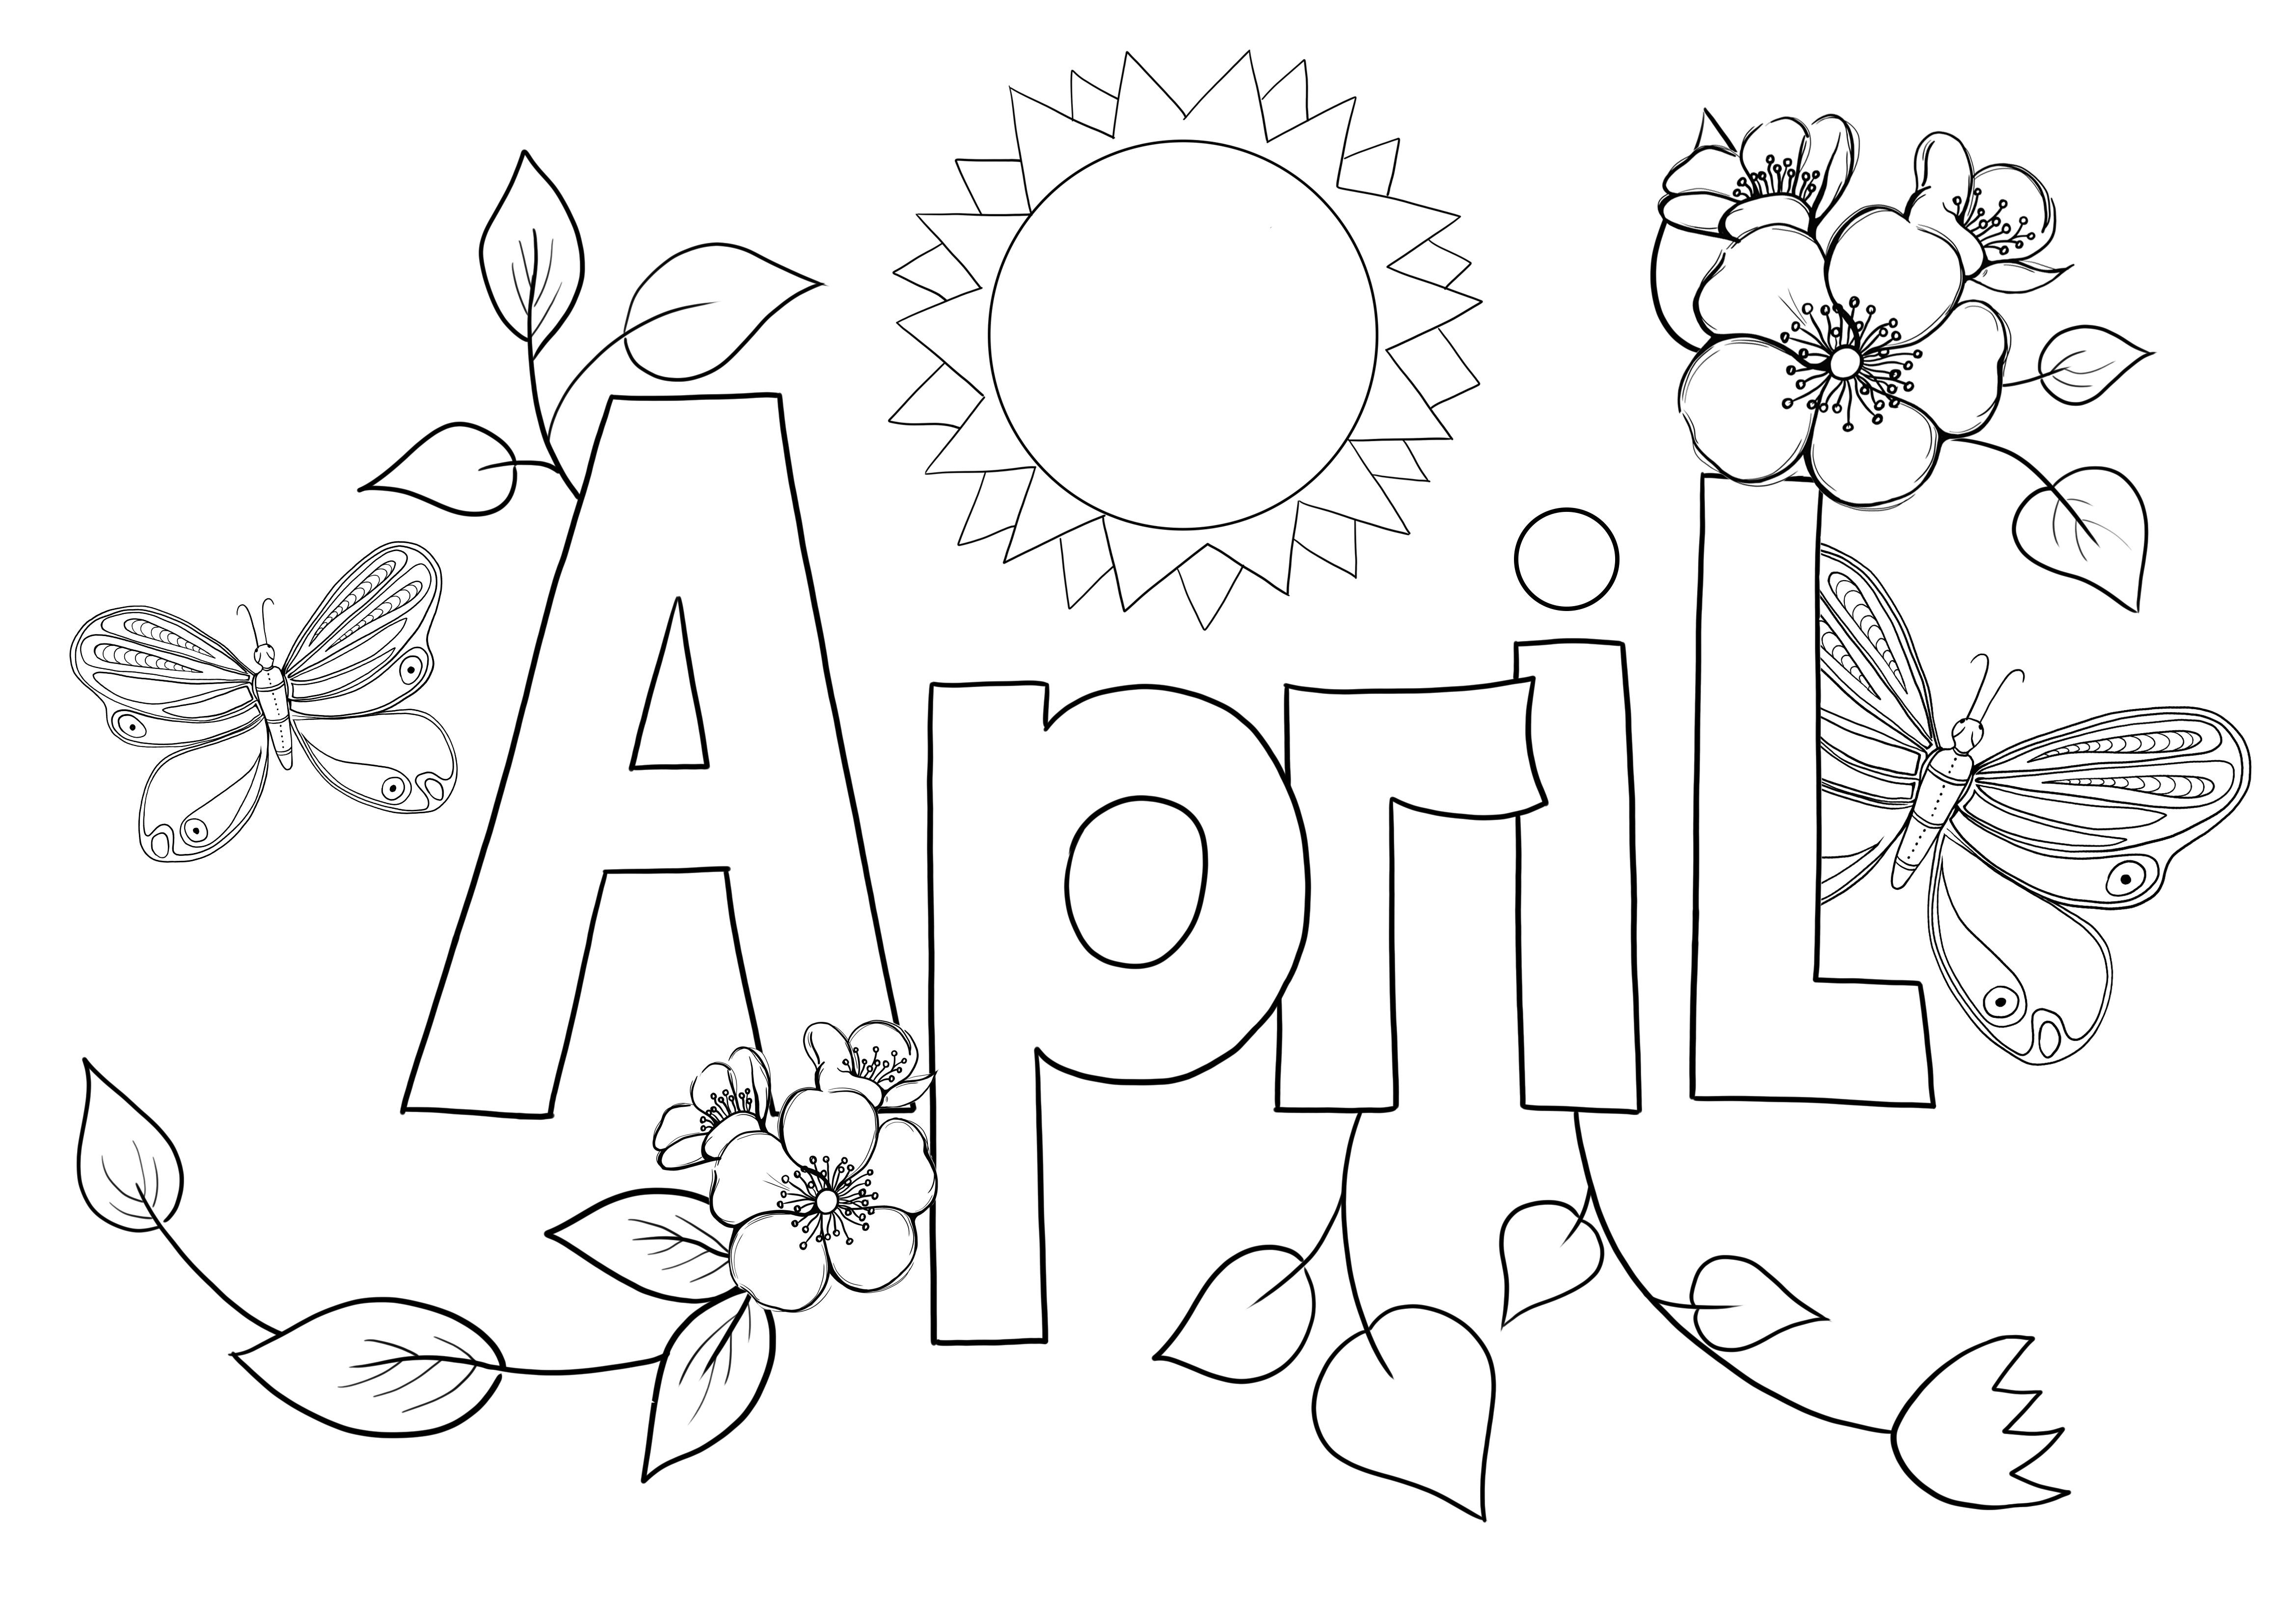 Mese di aprile per colorare e stampare in modo semplice gratuitamente